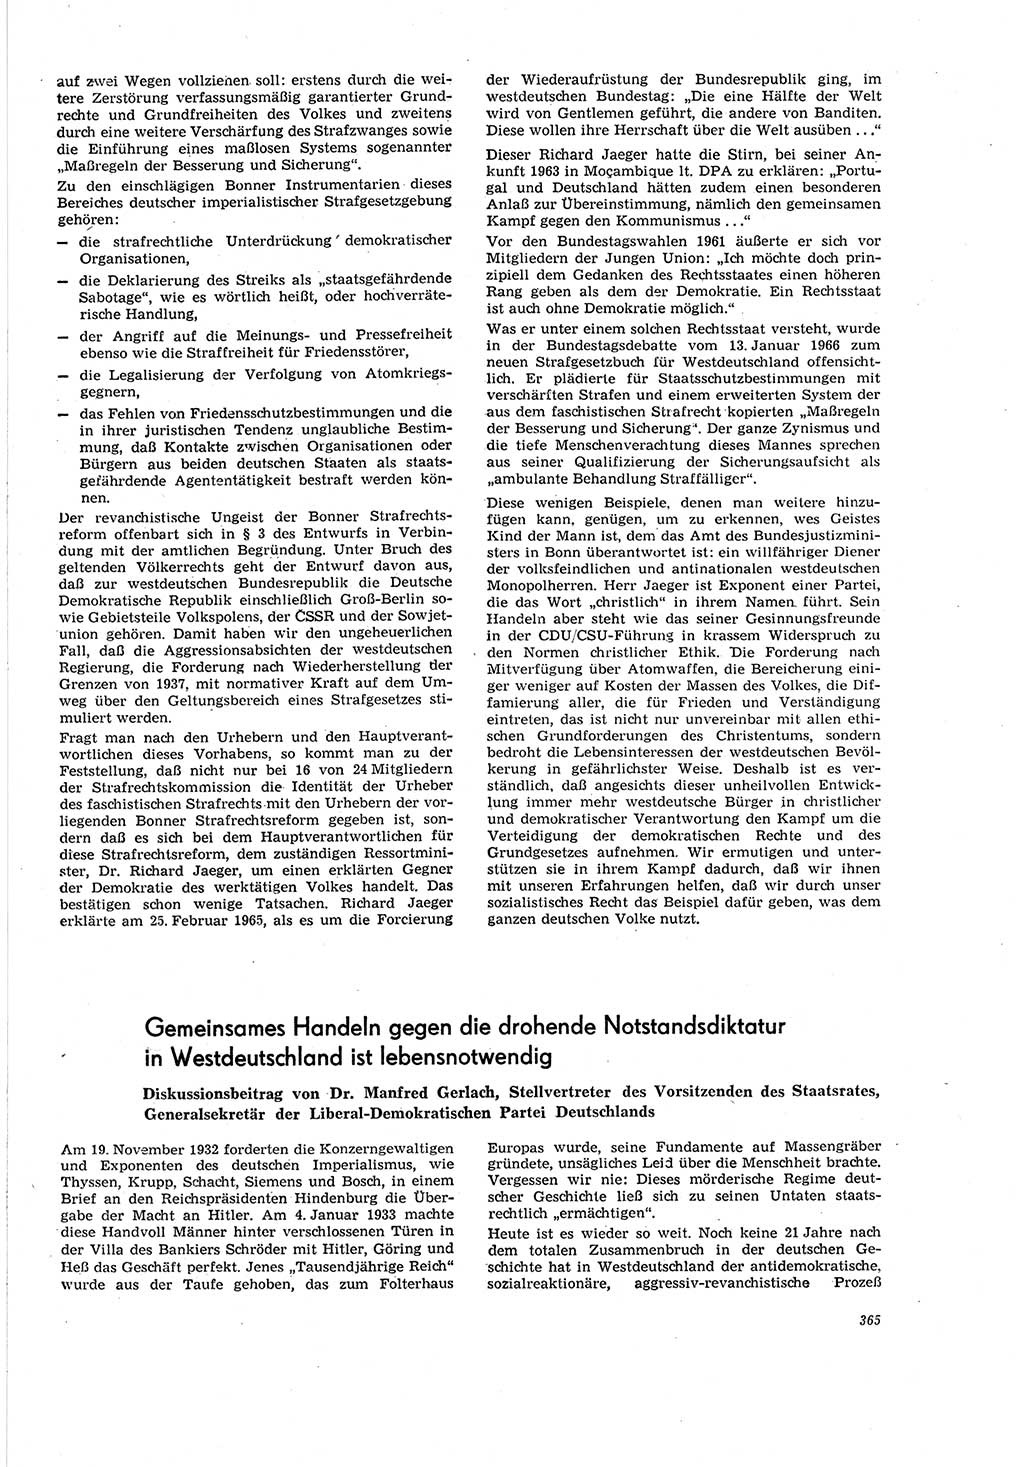 Neue Justiz (NJ), Zeitschrift für Recht und Rechtswissenschaft [Deutsche Demokratische Republik (DDR)], 20. Jahrgang 1966, Seite 365 (NJ DDR 1966, S. 365)